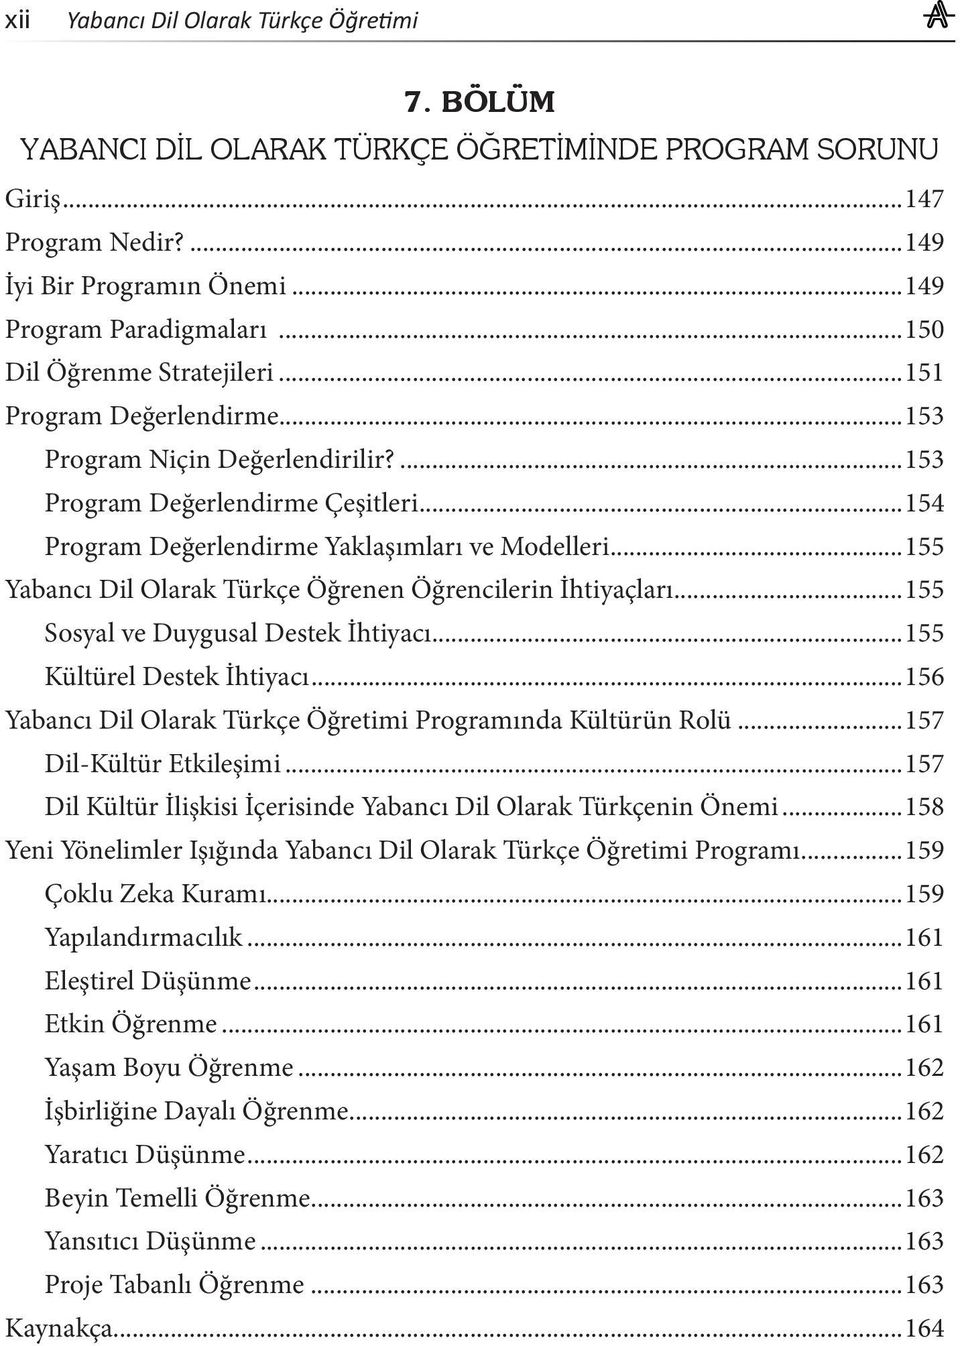 ..155 Yabancı Dil Olarak Türkçe Öğrenen Öğrencilerin İhtiyaçları...155 Sosyal ve Duygusal Destek İhtiyacı...155 Kültürel Destek İhtiyacı.